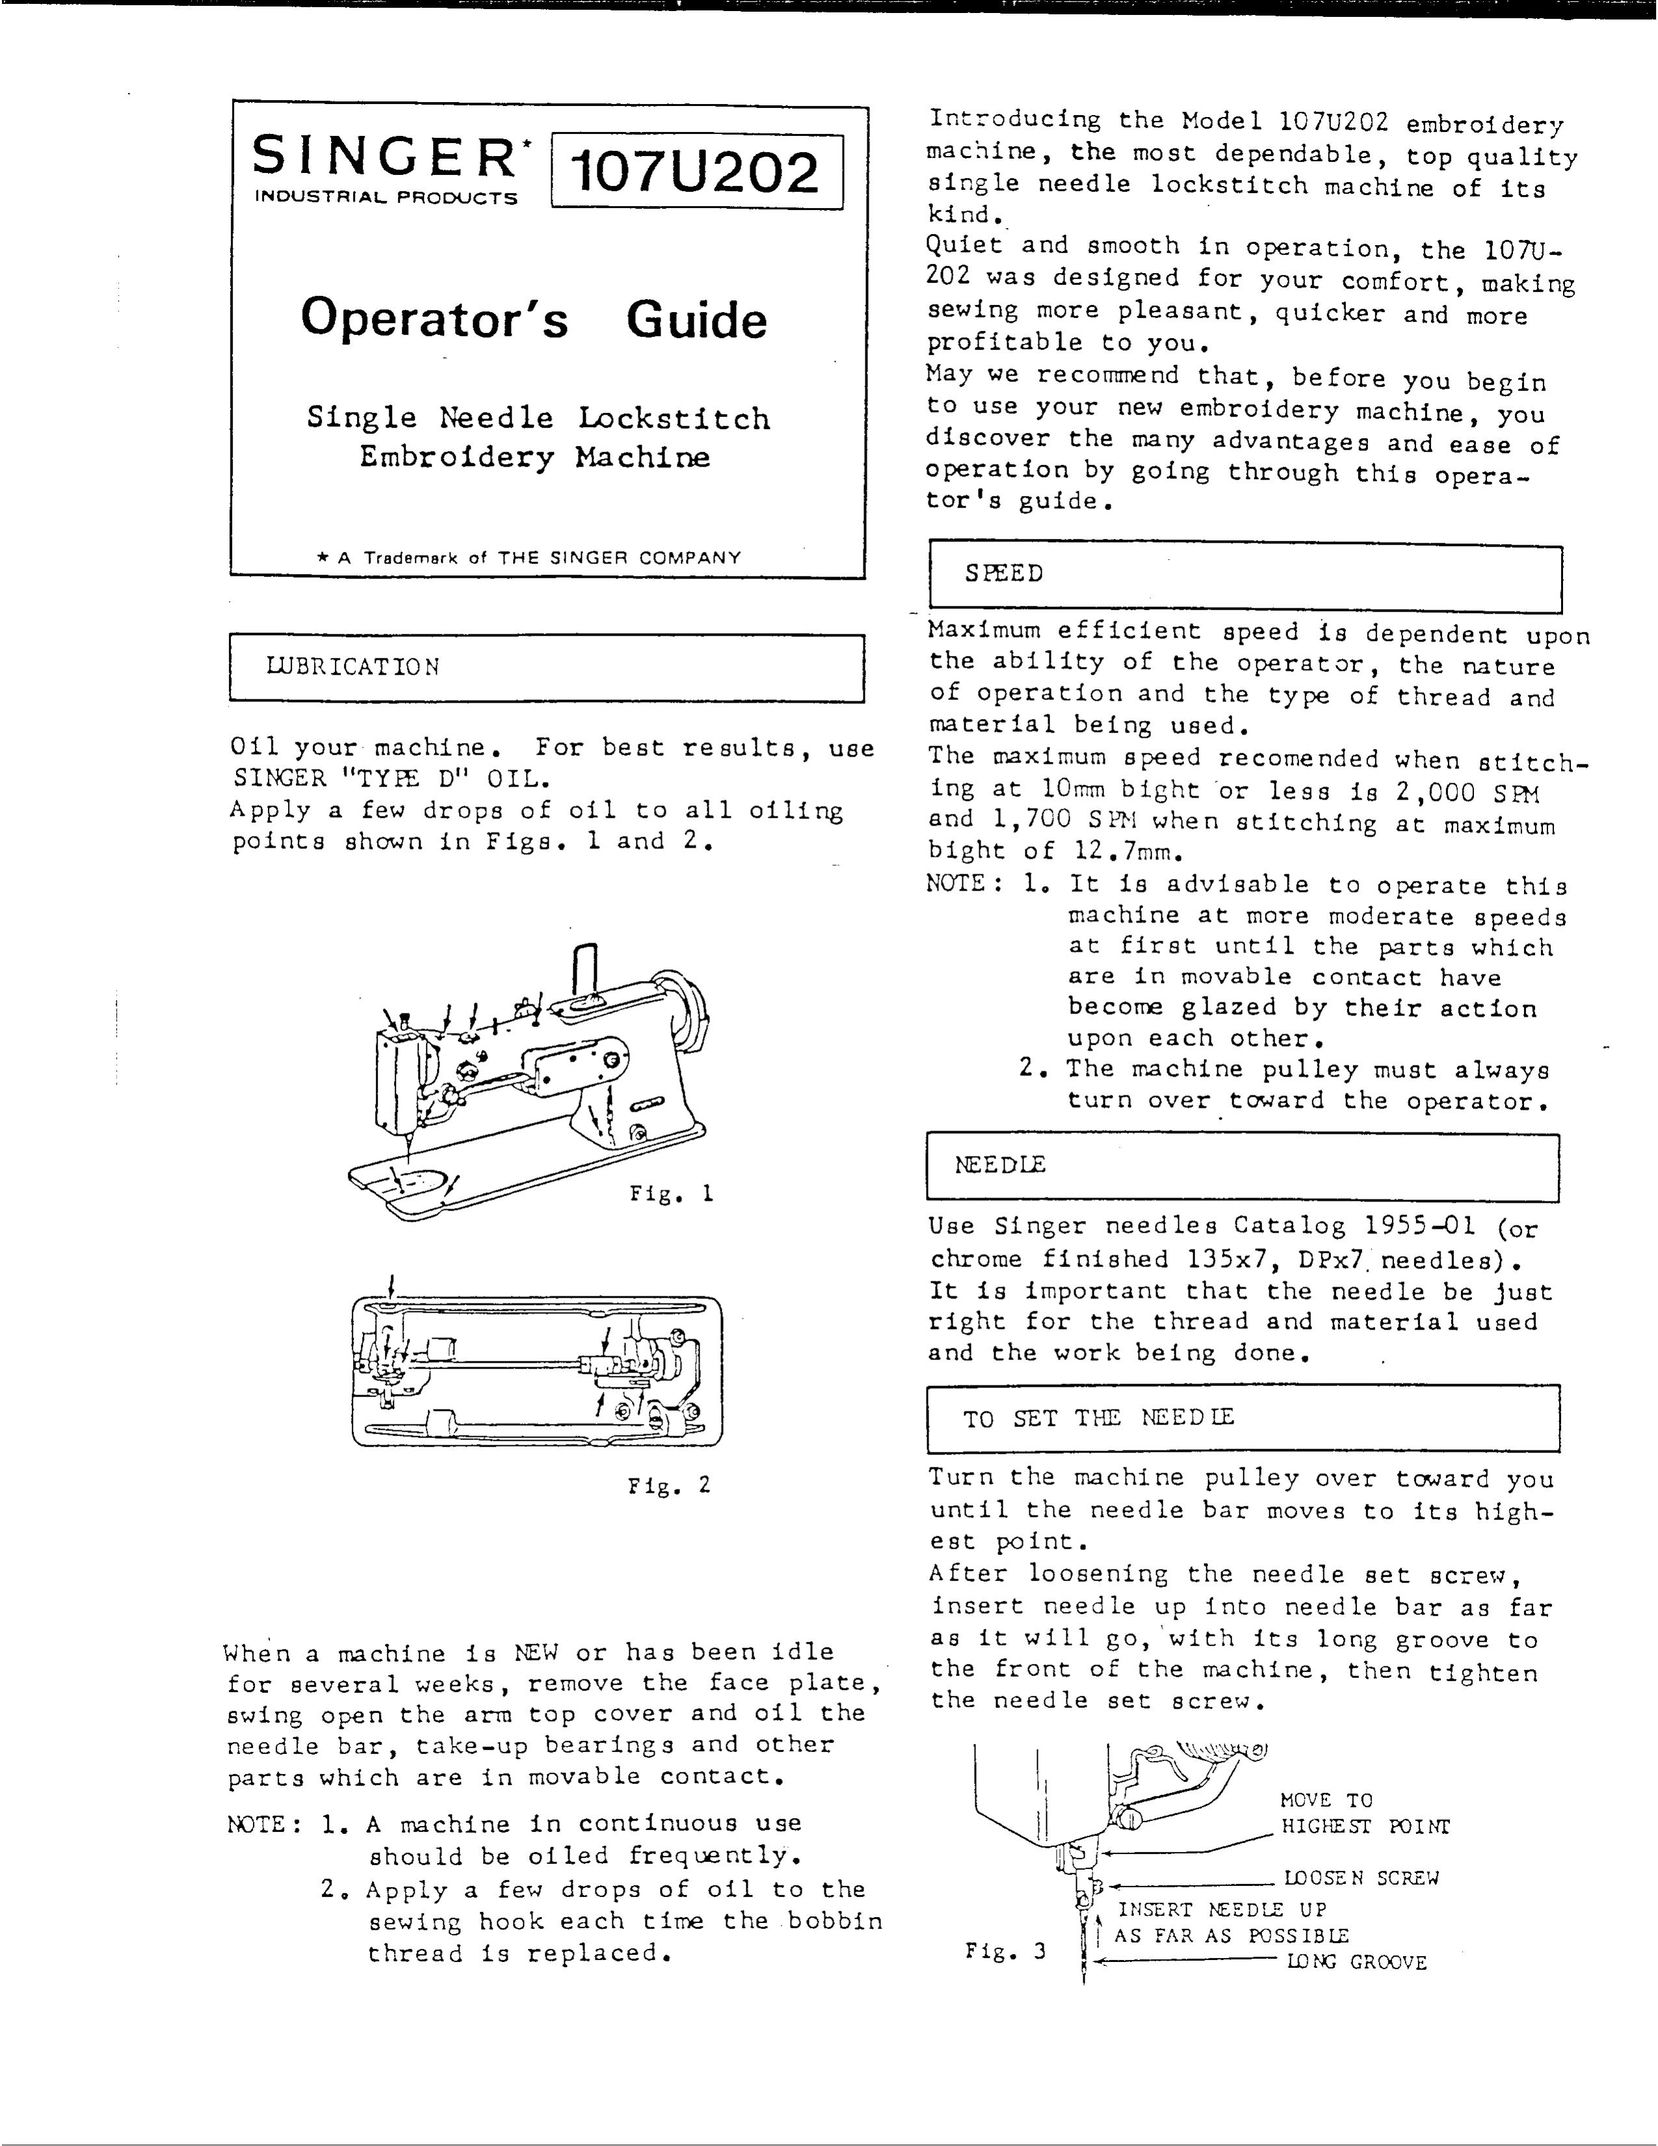 Singer 107U202 Sewing Machine User Manual (Page 1)